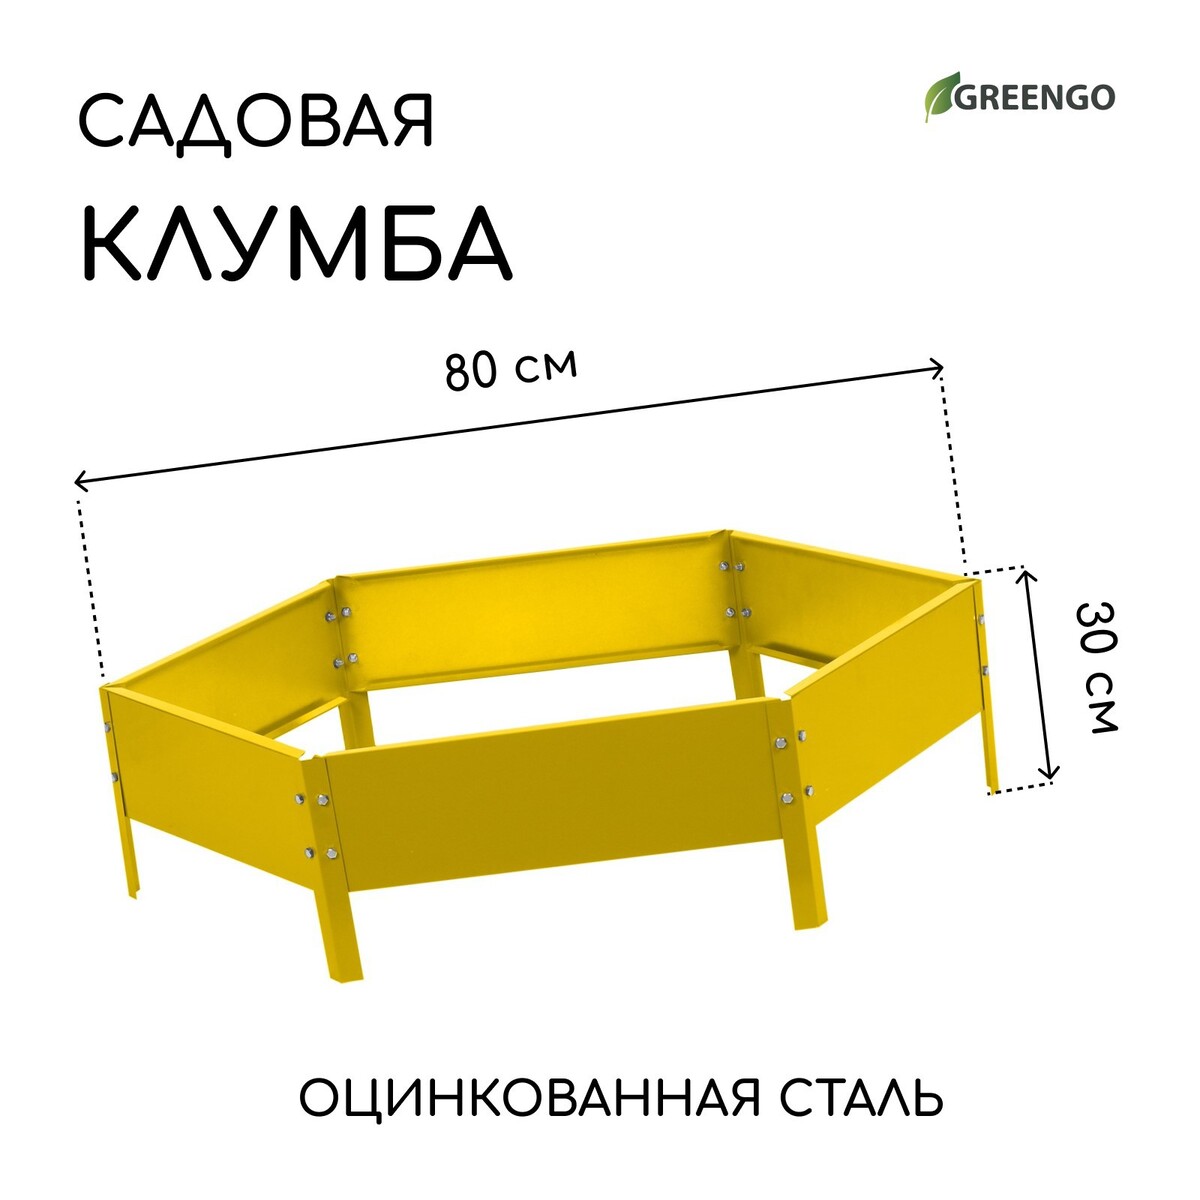 Клумба оцинкованная, d = 80 см, h = 15 см, желтая, greengo клумба оцинкованная 50 × 50 × 15 см ярко зеленая greengo